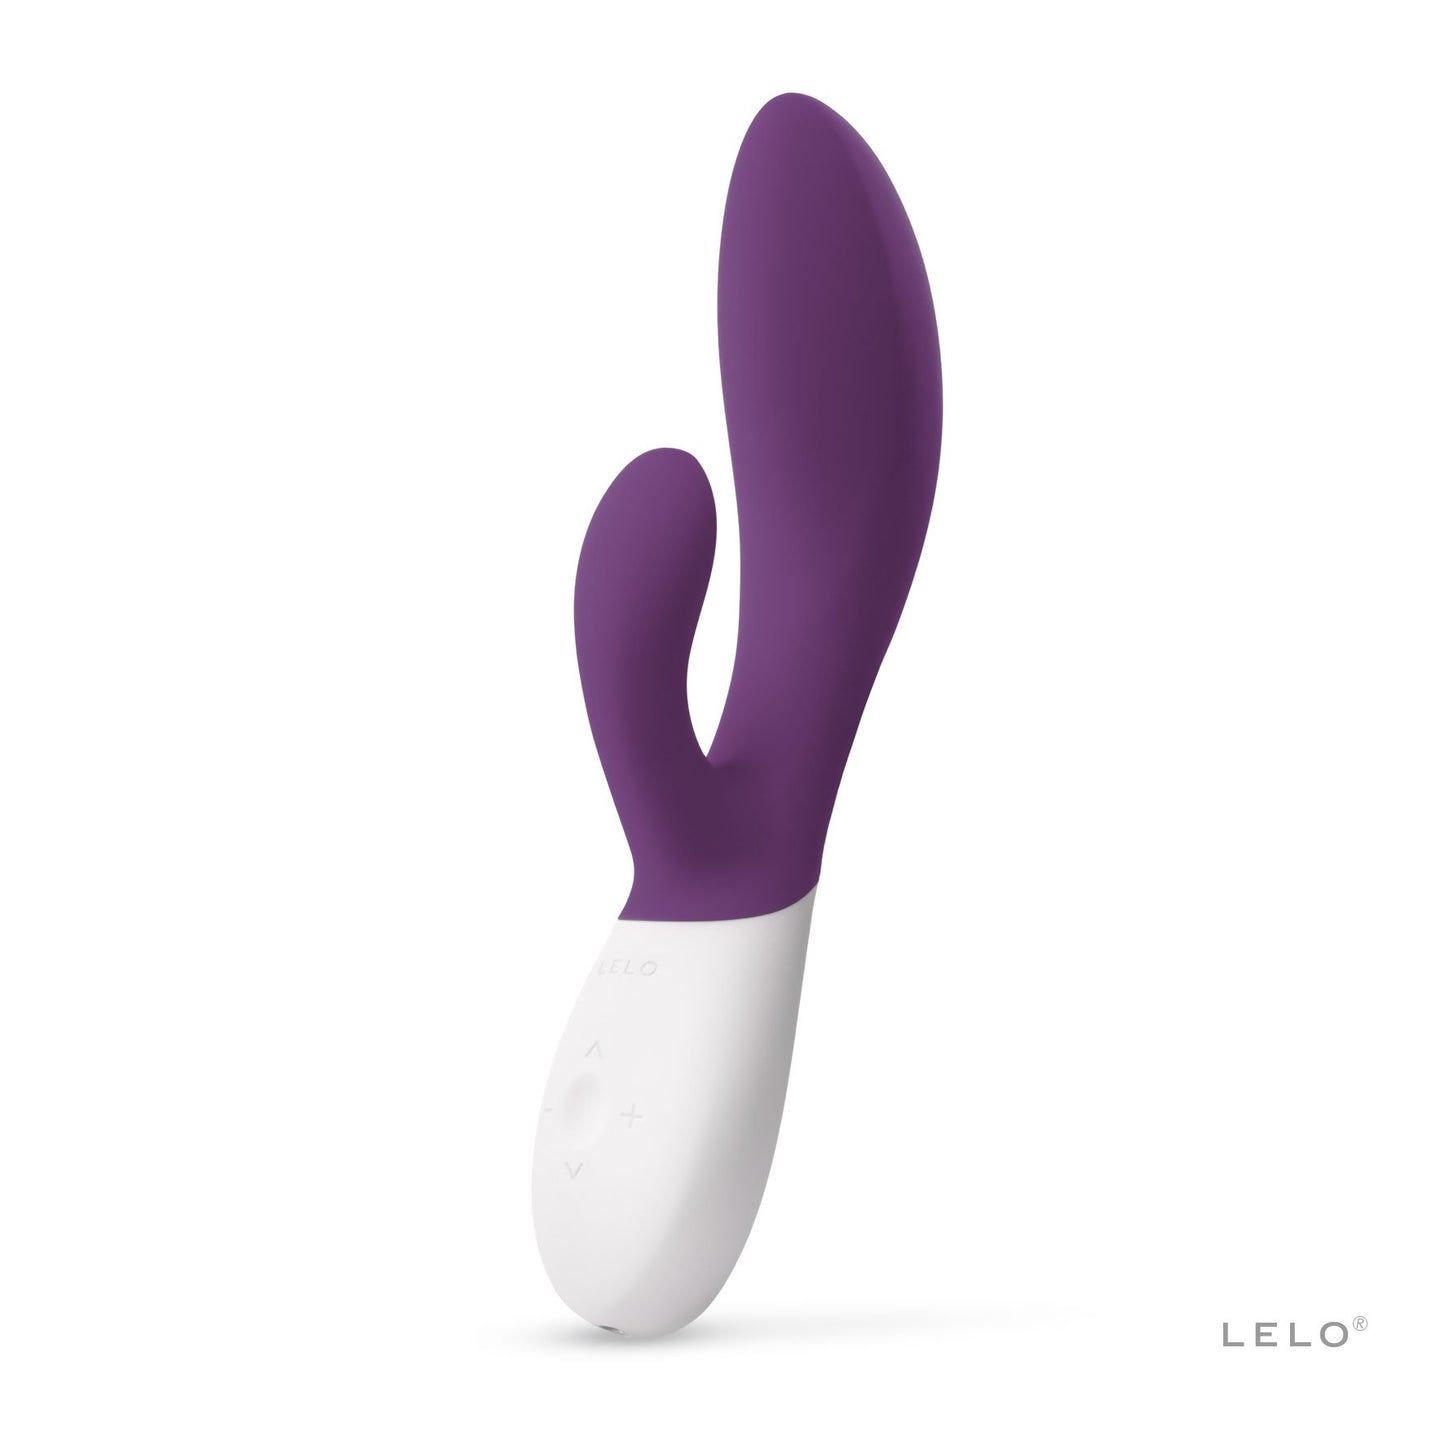 LELO Ina Wave™ 2 仿指雙頭按摩棒 雙頭按摩棒 紫色 購買